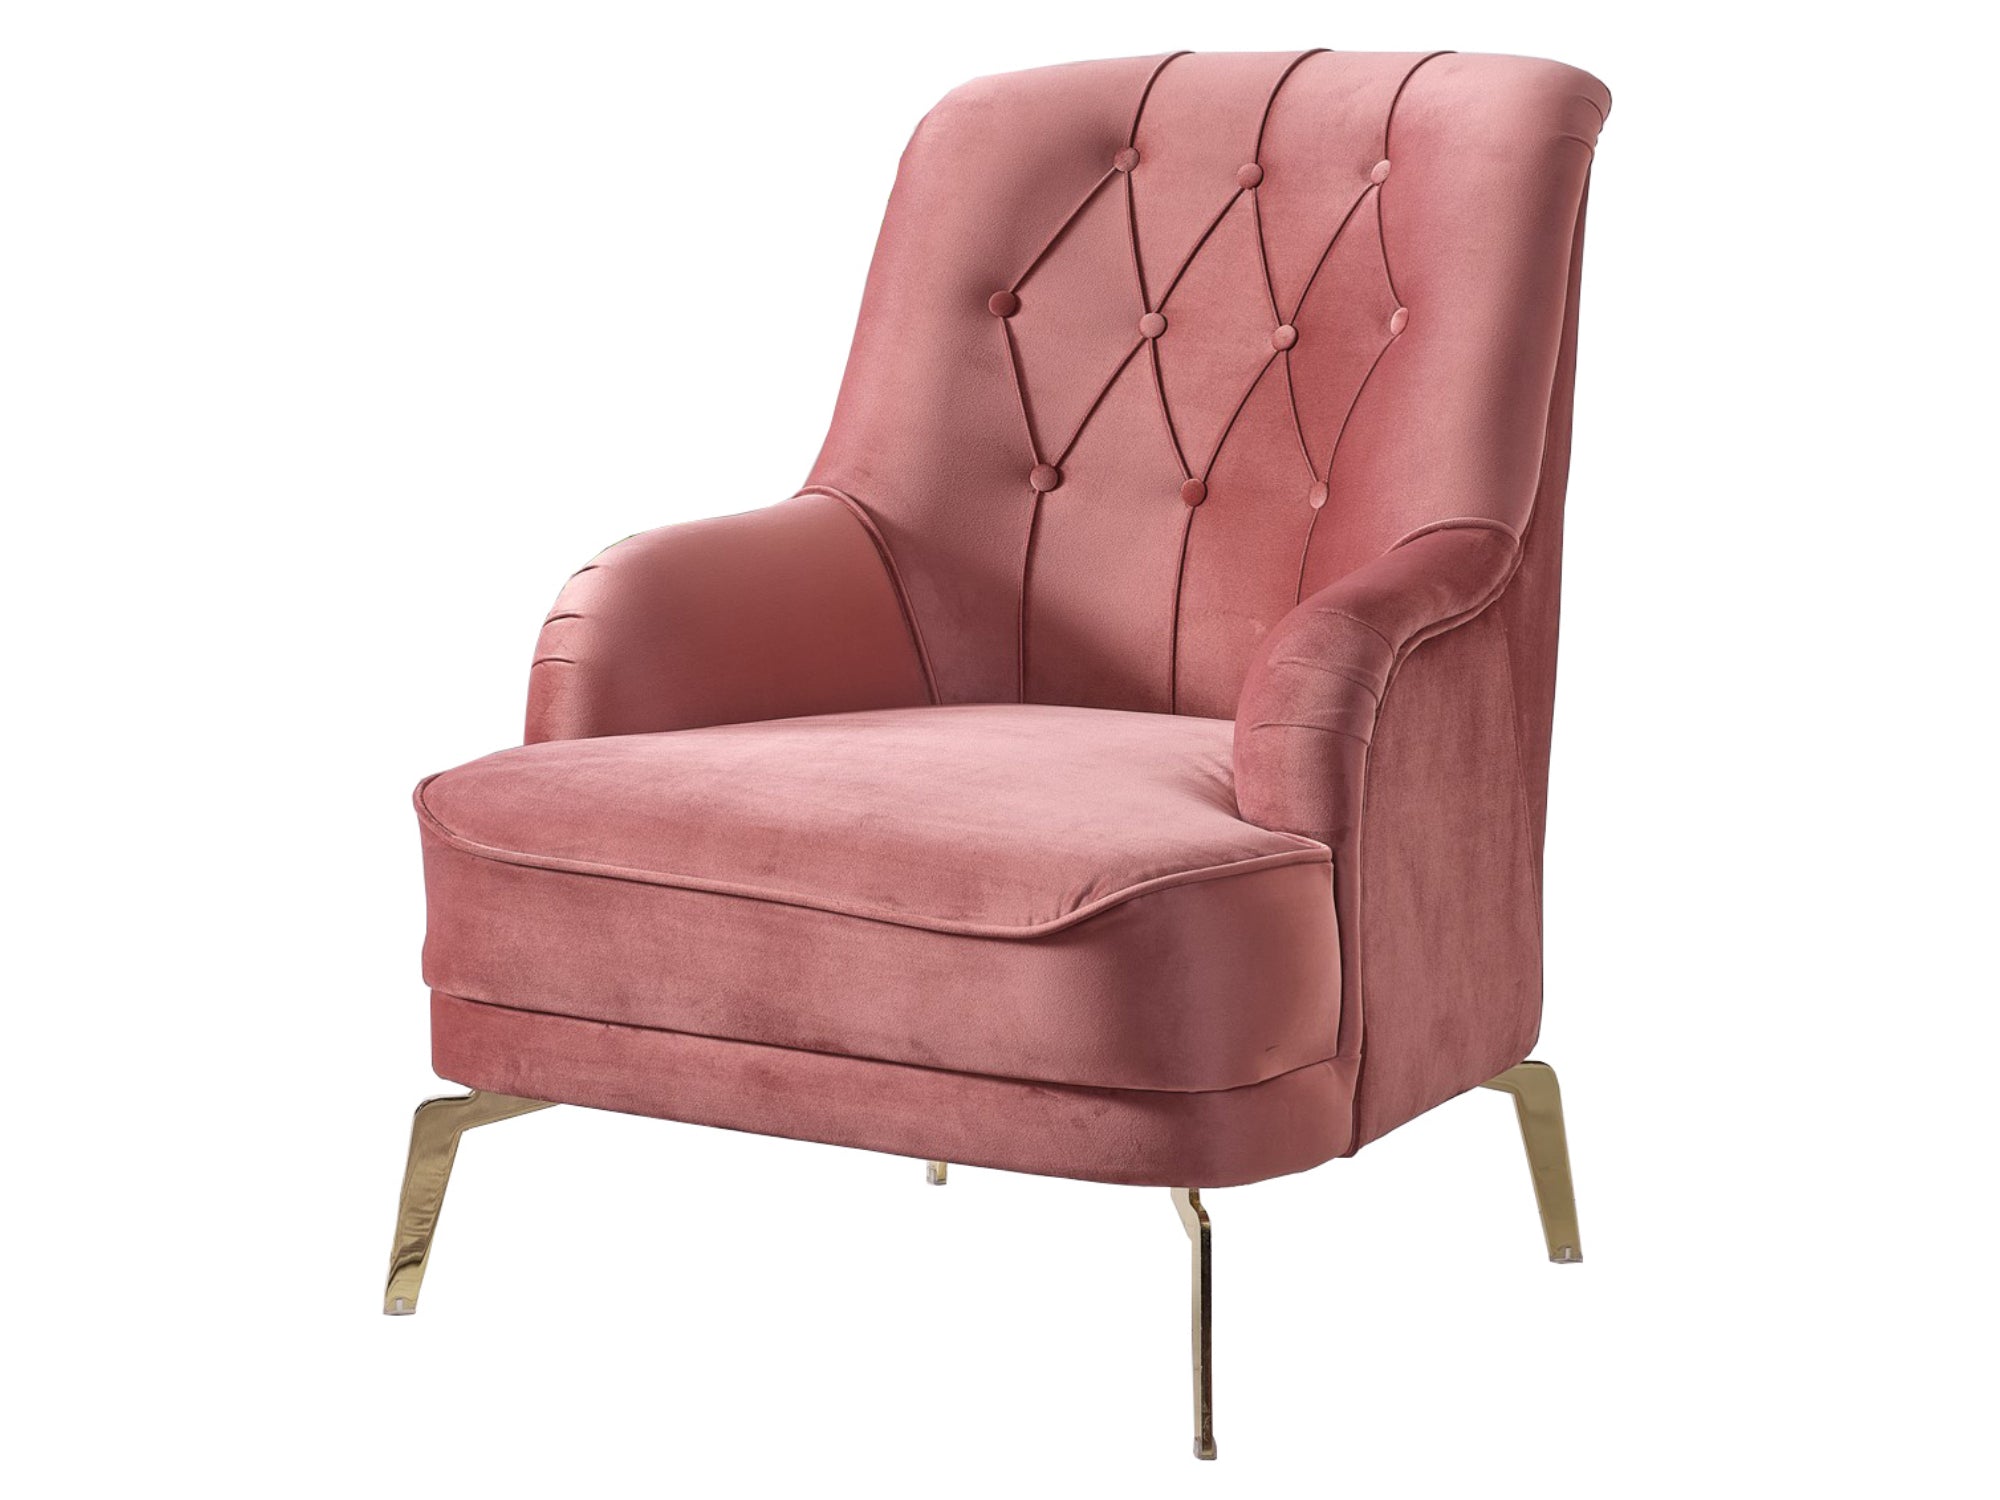 Fiesta Chair Pink